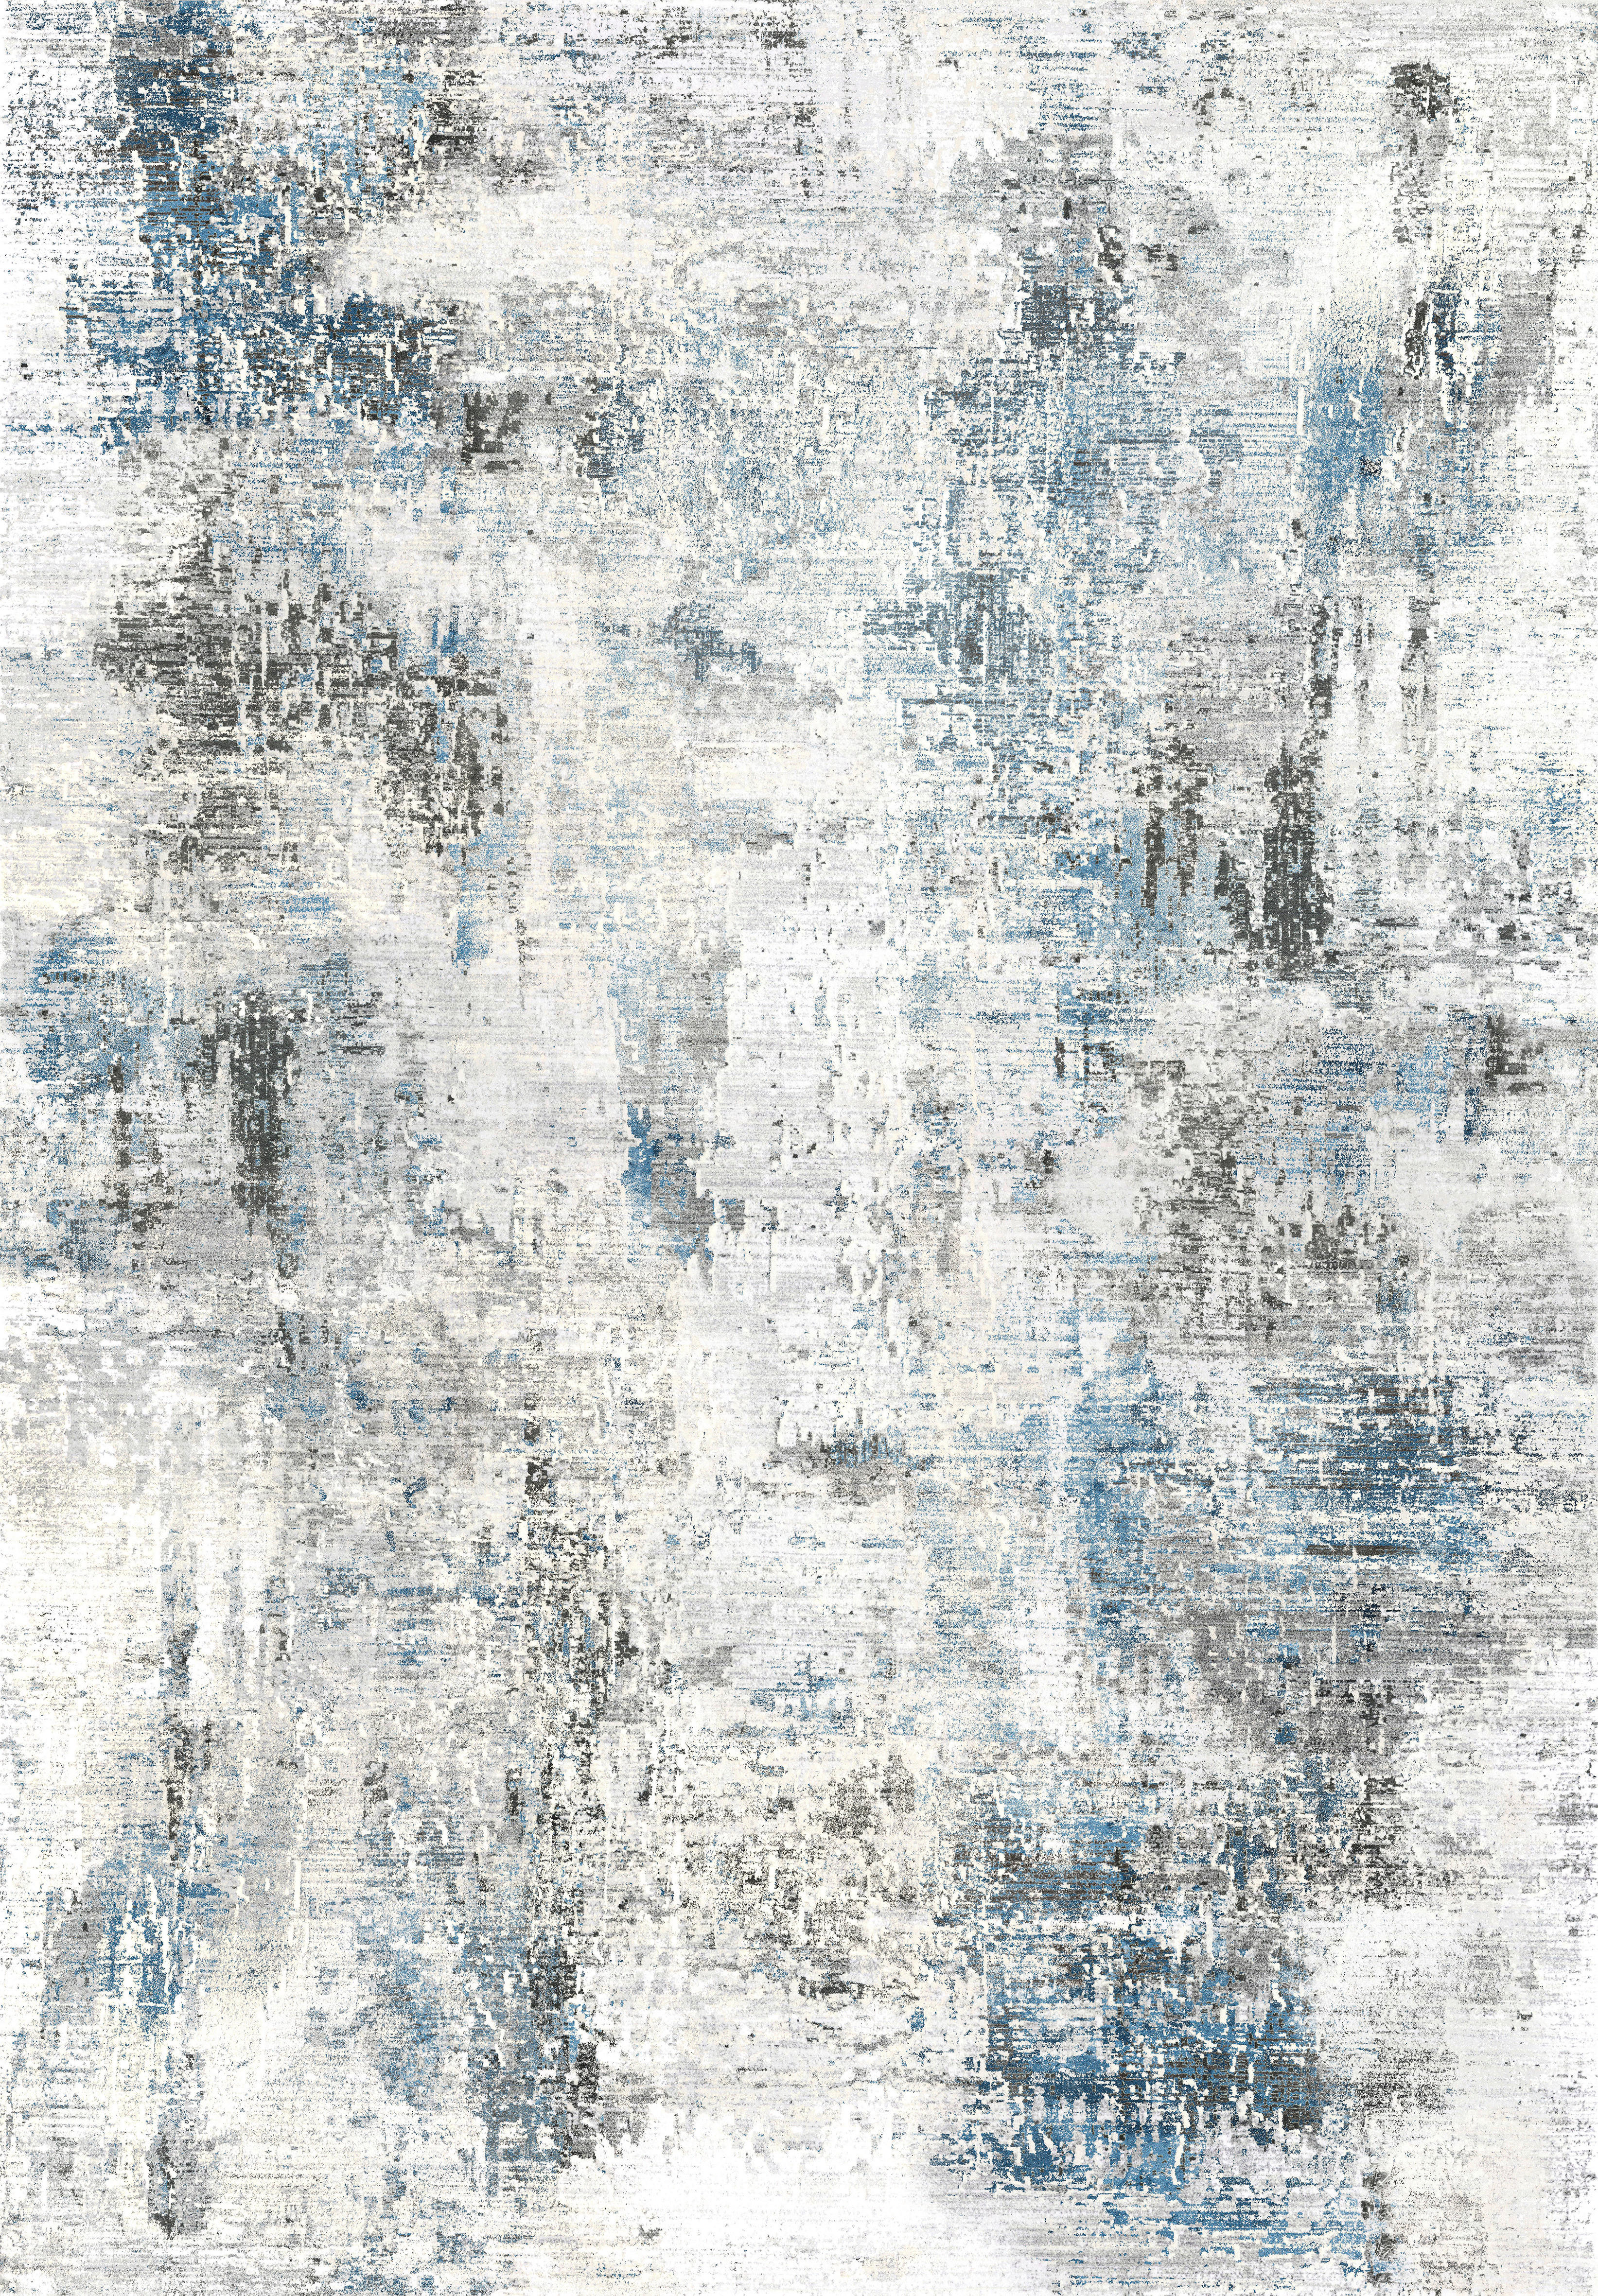 Novel VINTAGE KOBEREC, 80/150 cm, modrá, šedá - modrá,šedá - textil